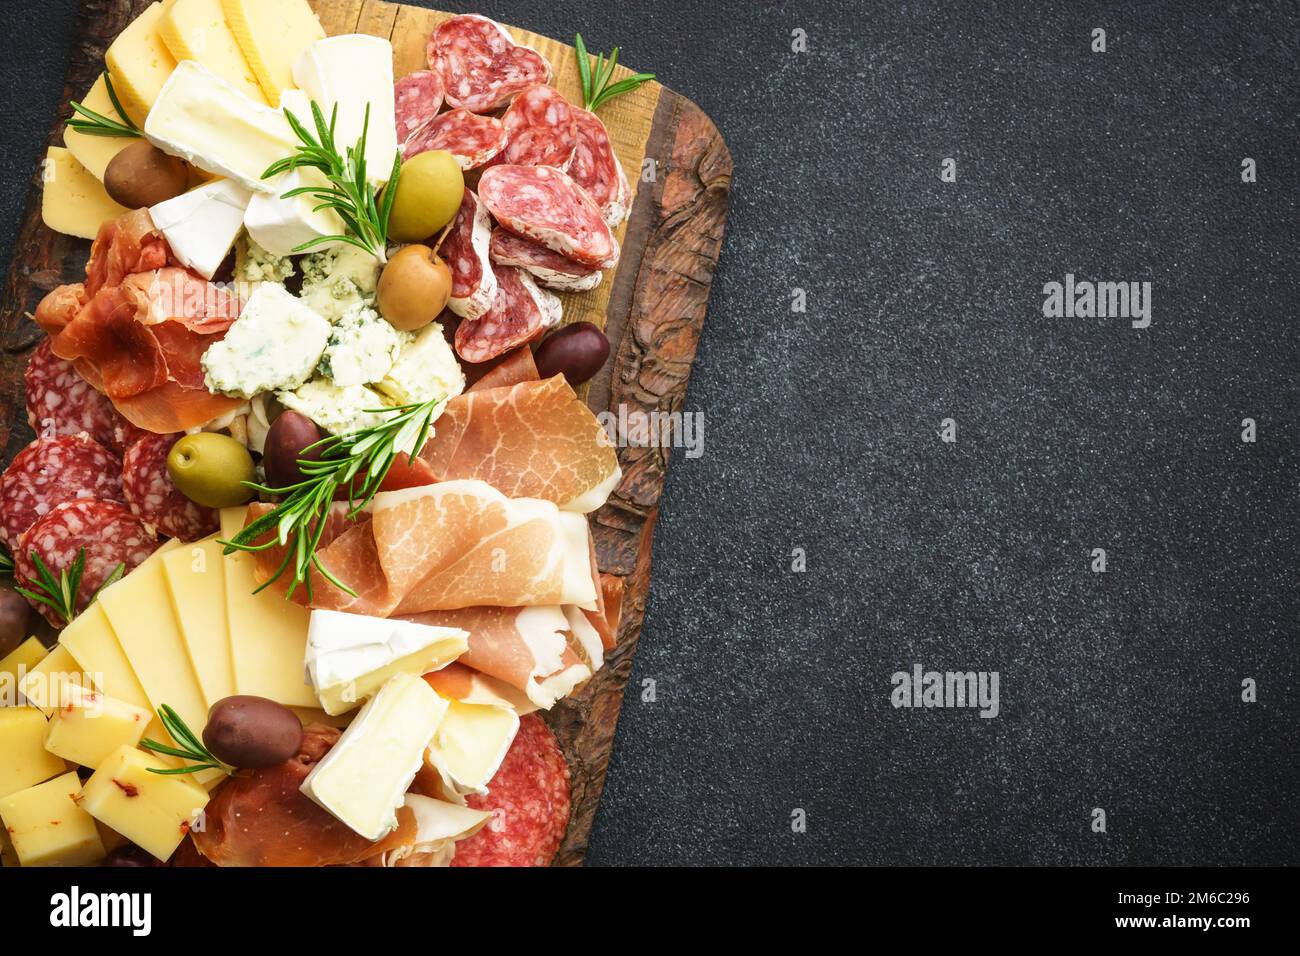 Plateau antipasti avec jamon, salammi et assortiment de fromages. Banque D'Images